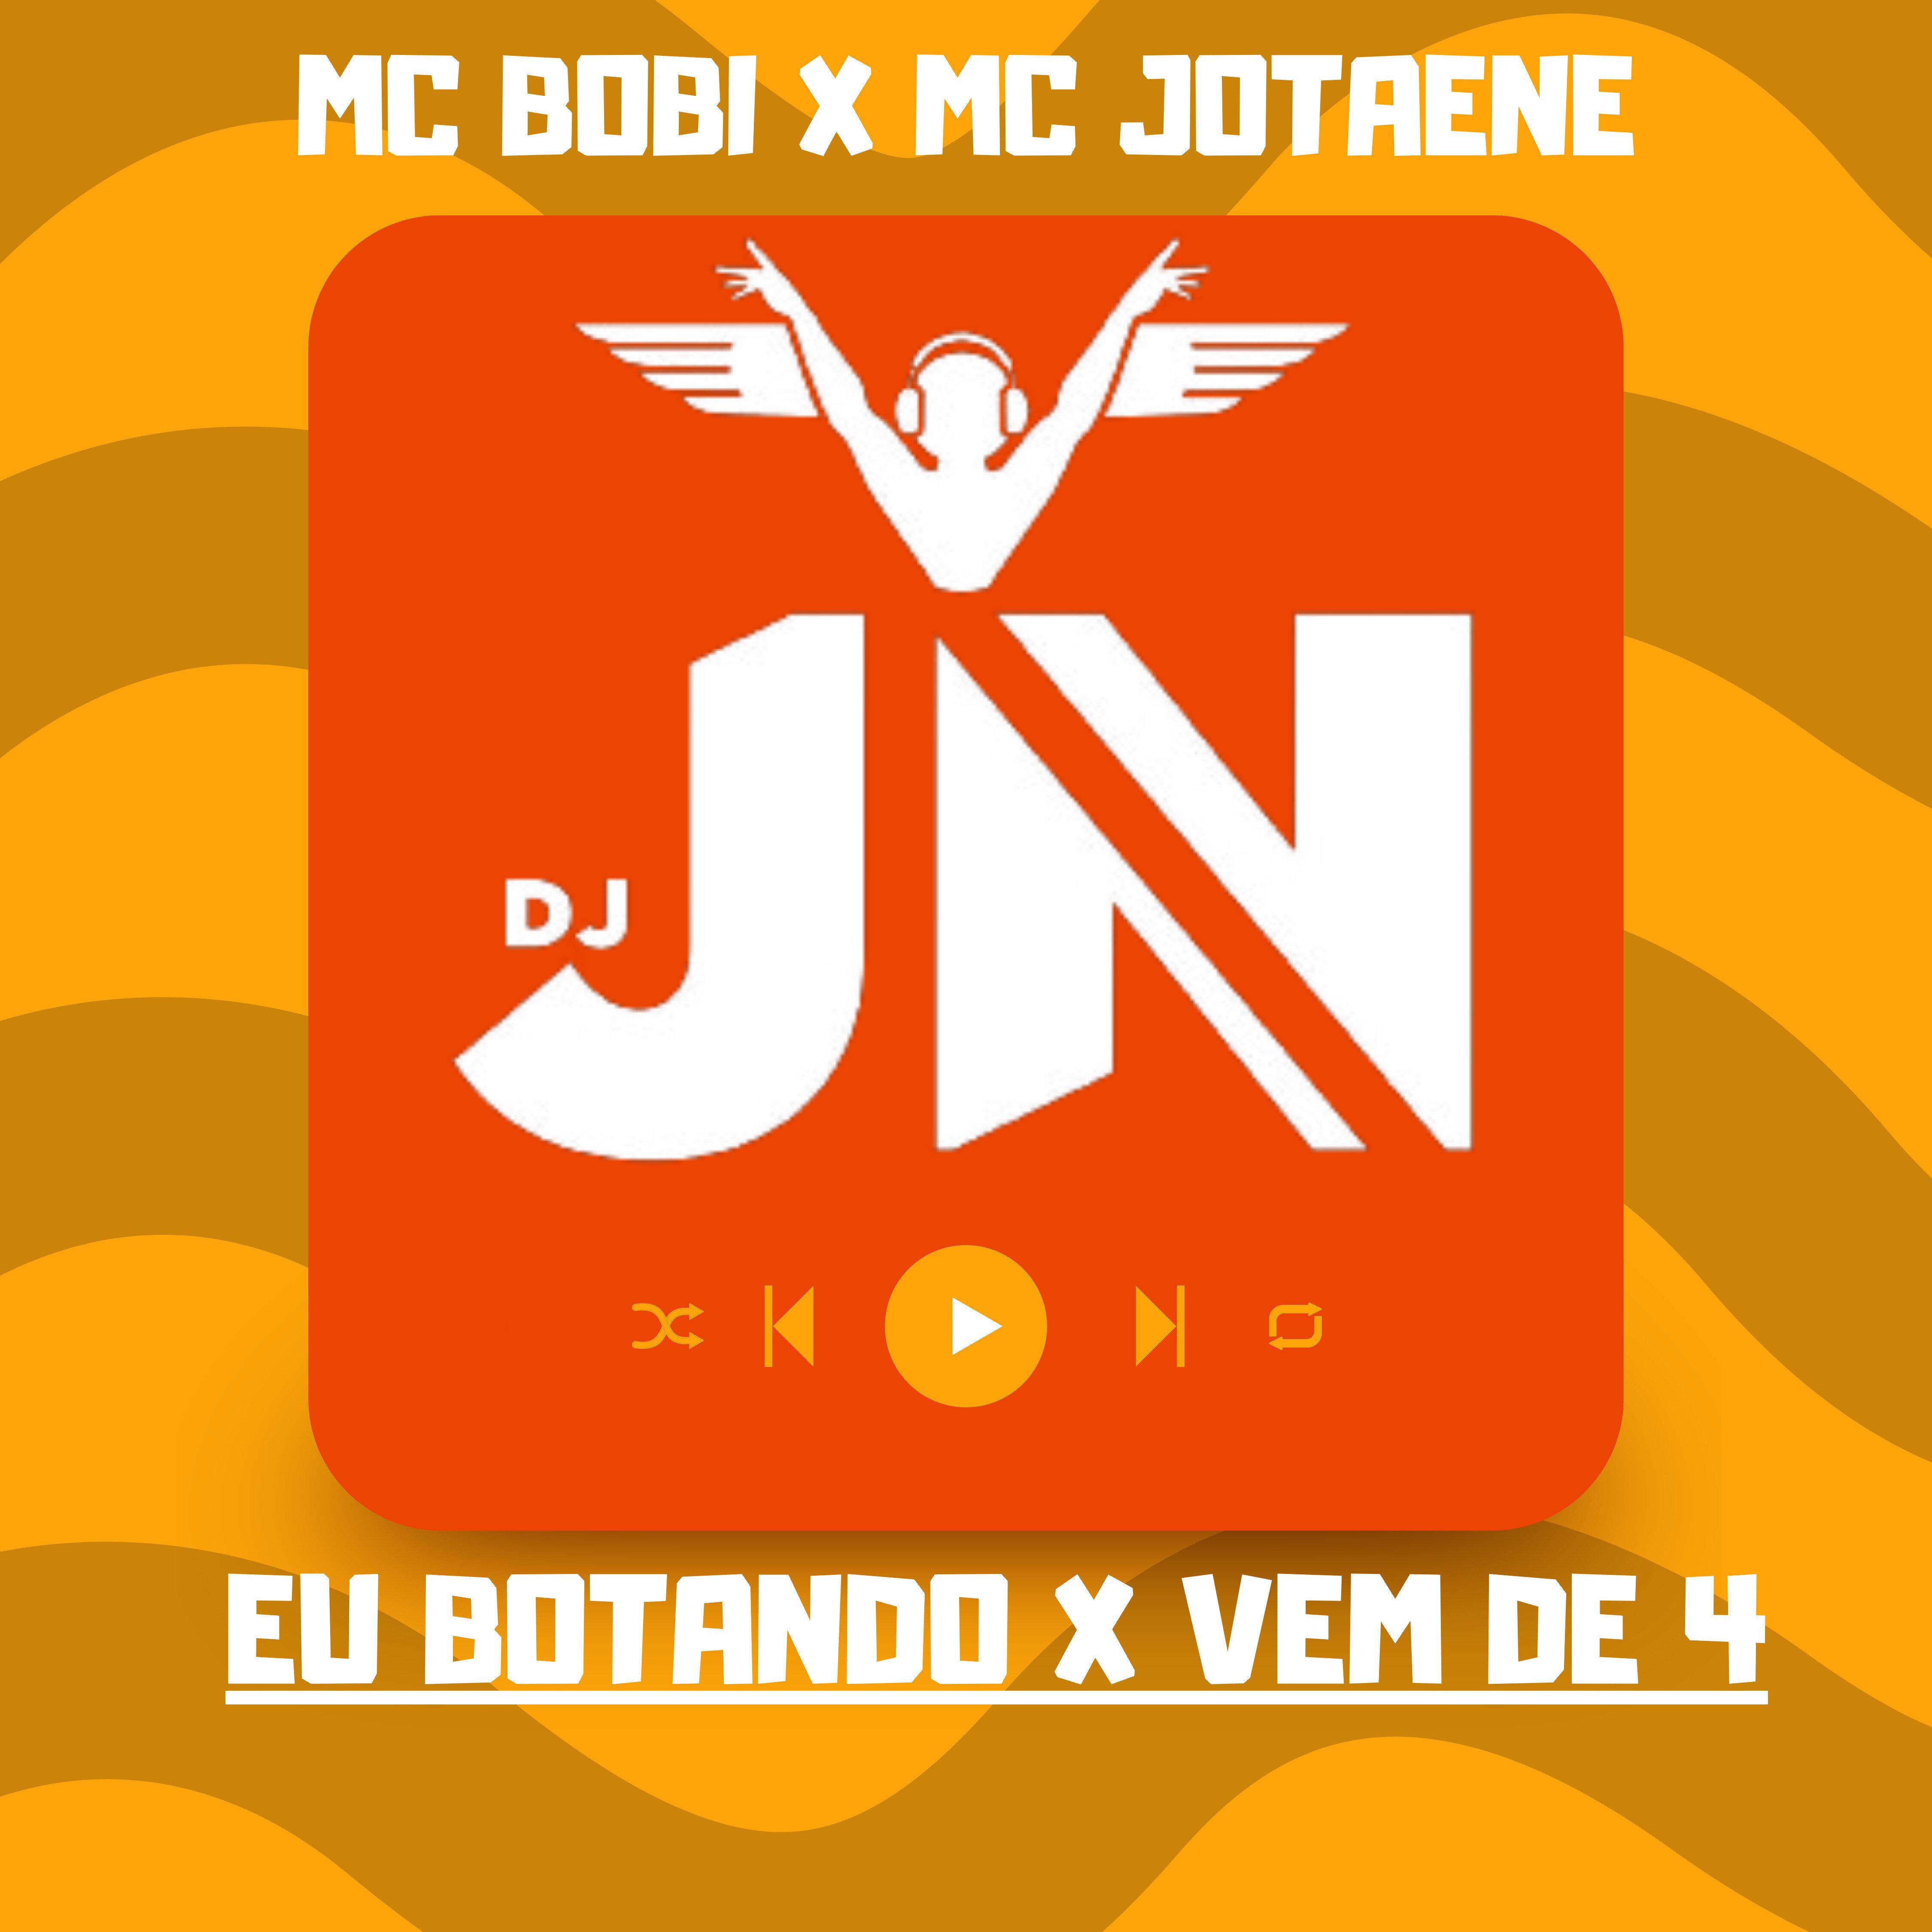 DJ JN Oficiall - Eu Botando x Vem de 4